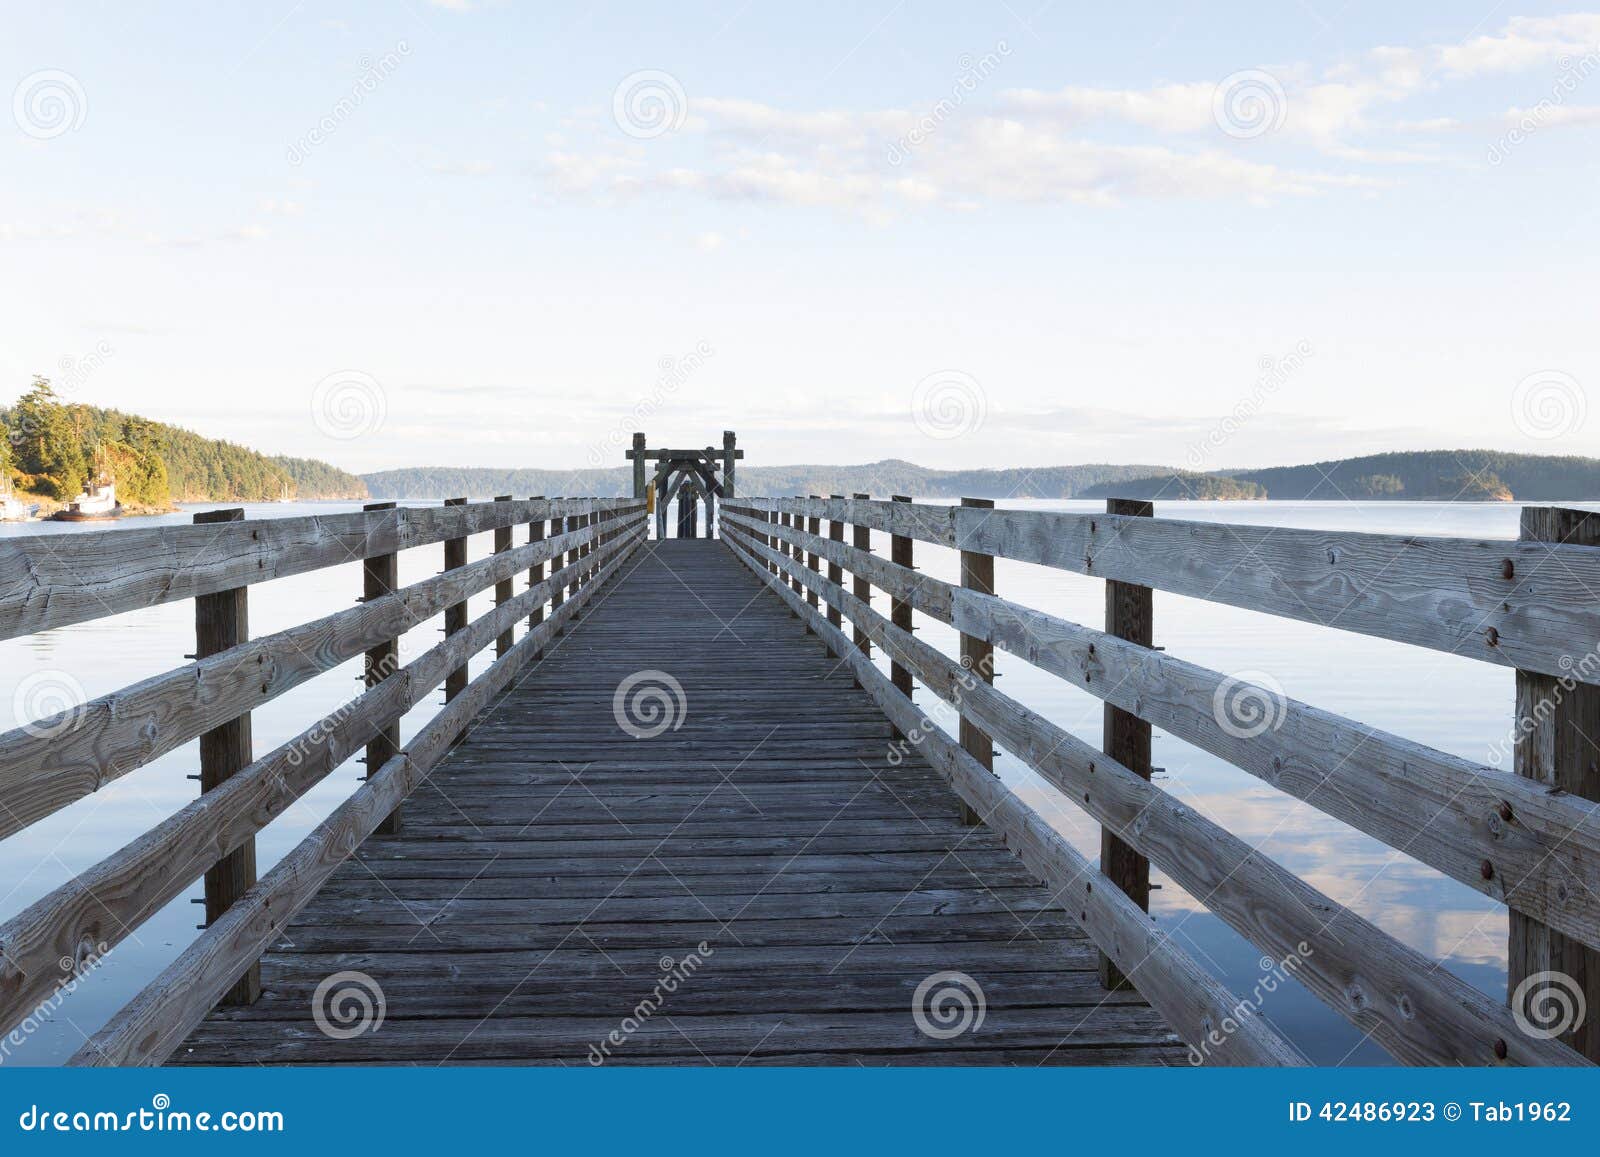 wooden walkway in orcas island harbor